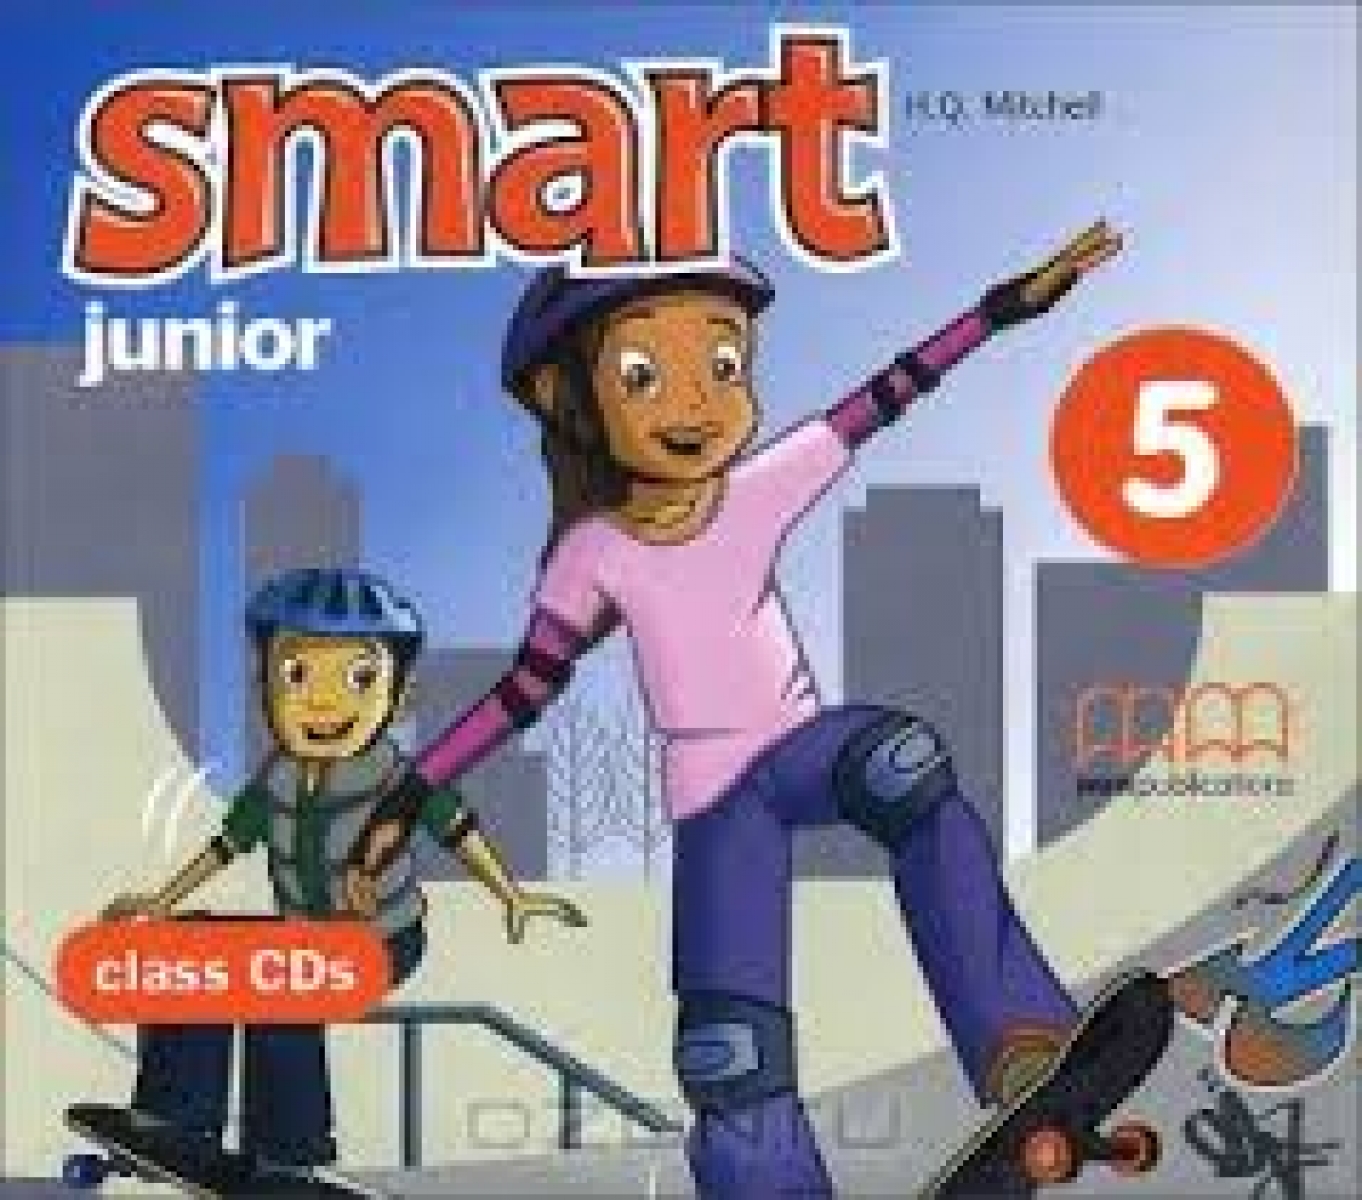 Mitchell H.Q. Smart Junior Level 5 Audio CD 